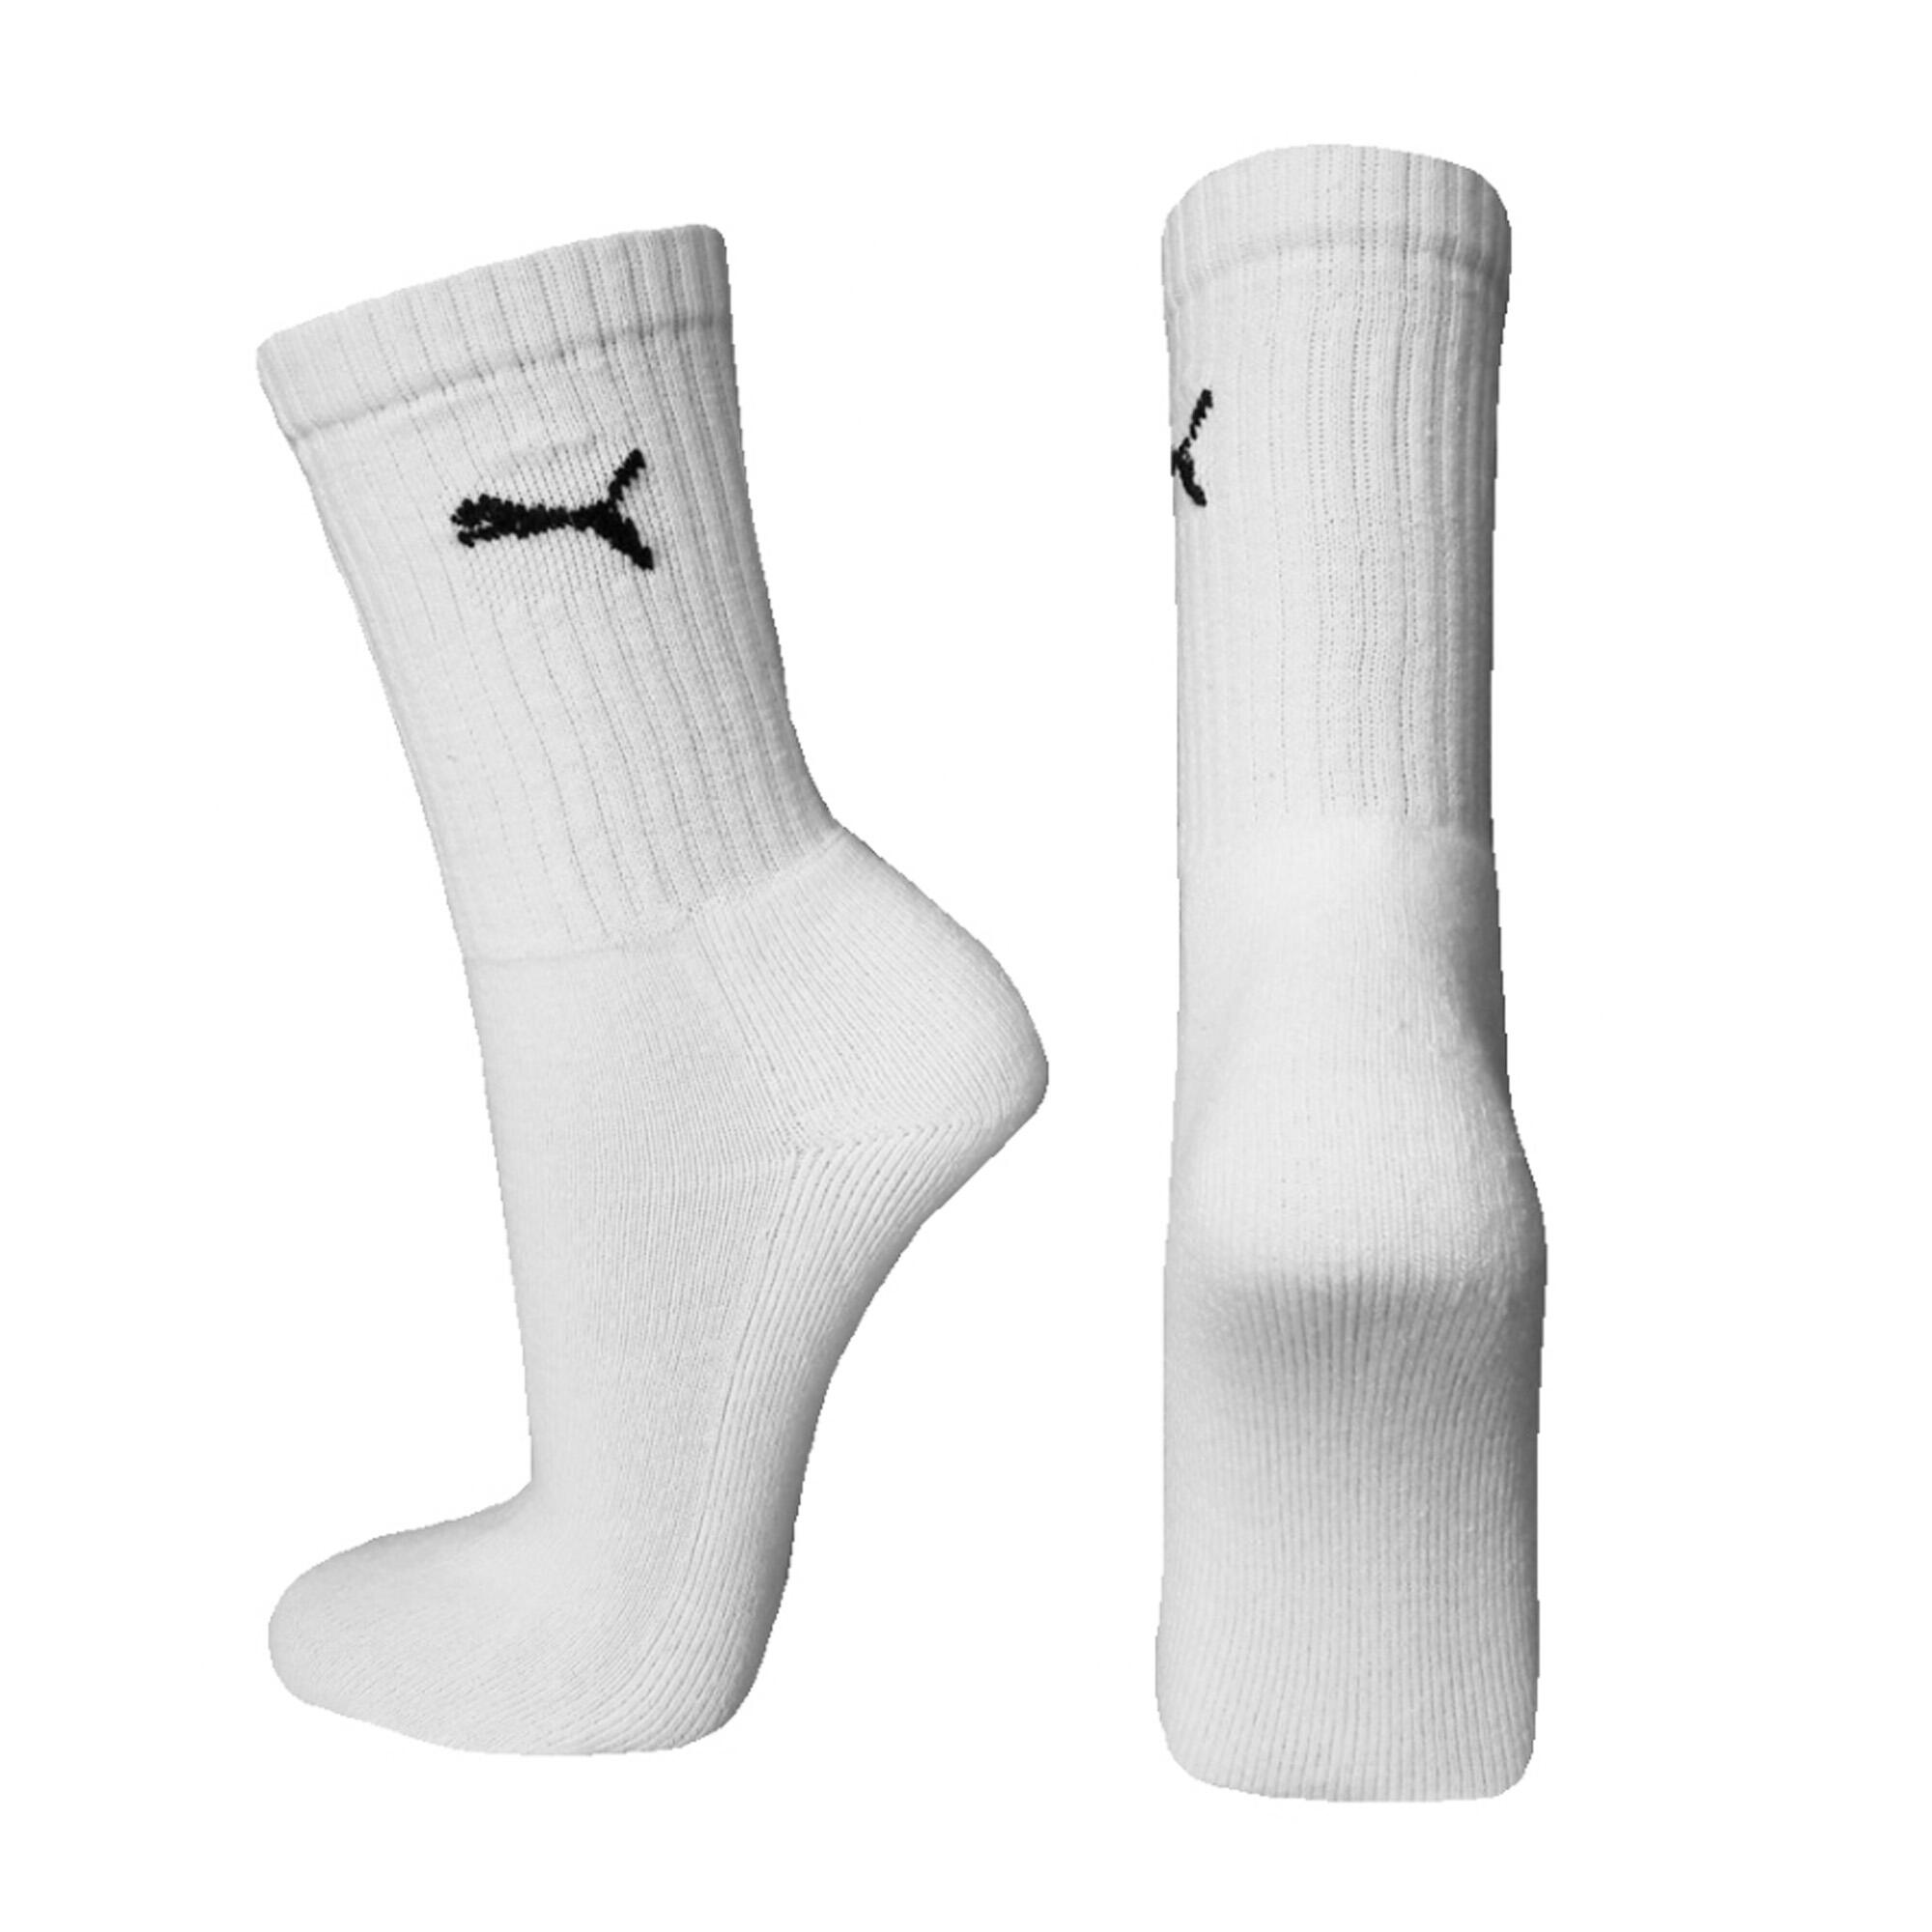 Crew Sport Socks 3 Pair Pack / Mens Socks (White) 2/3